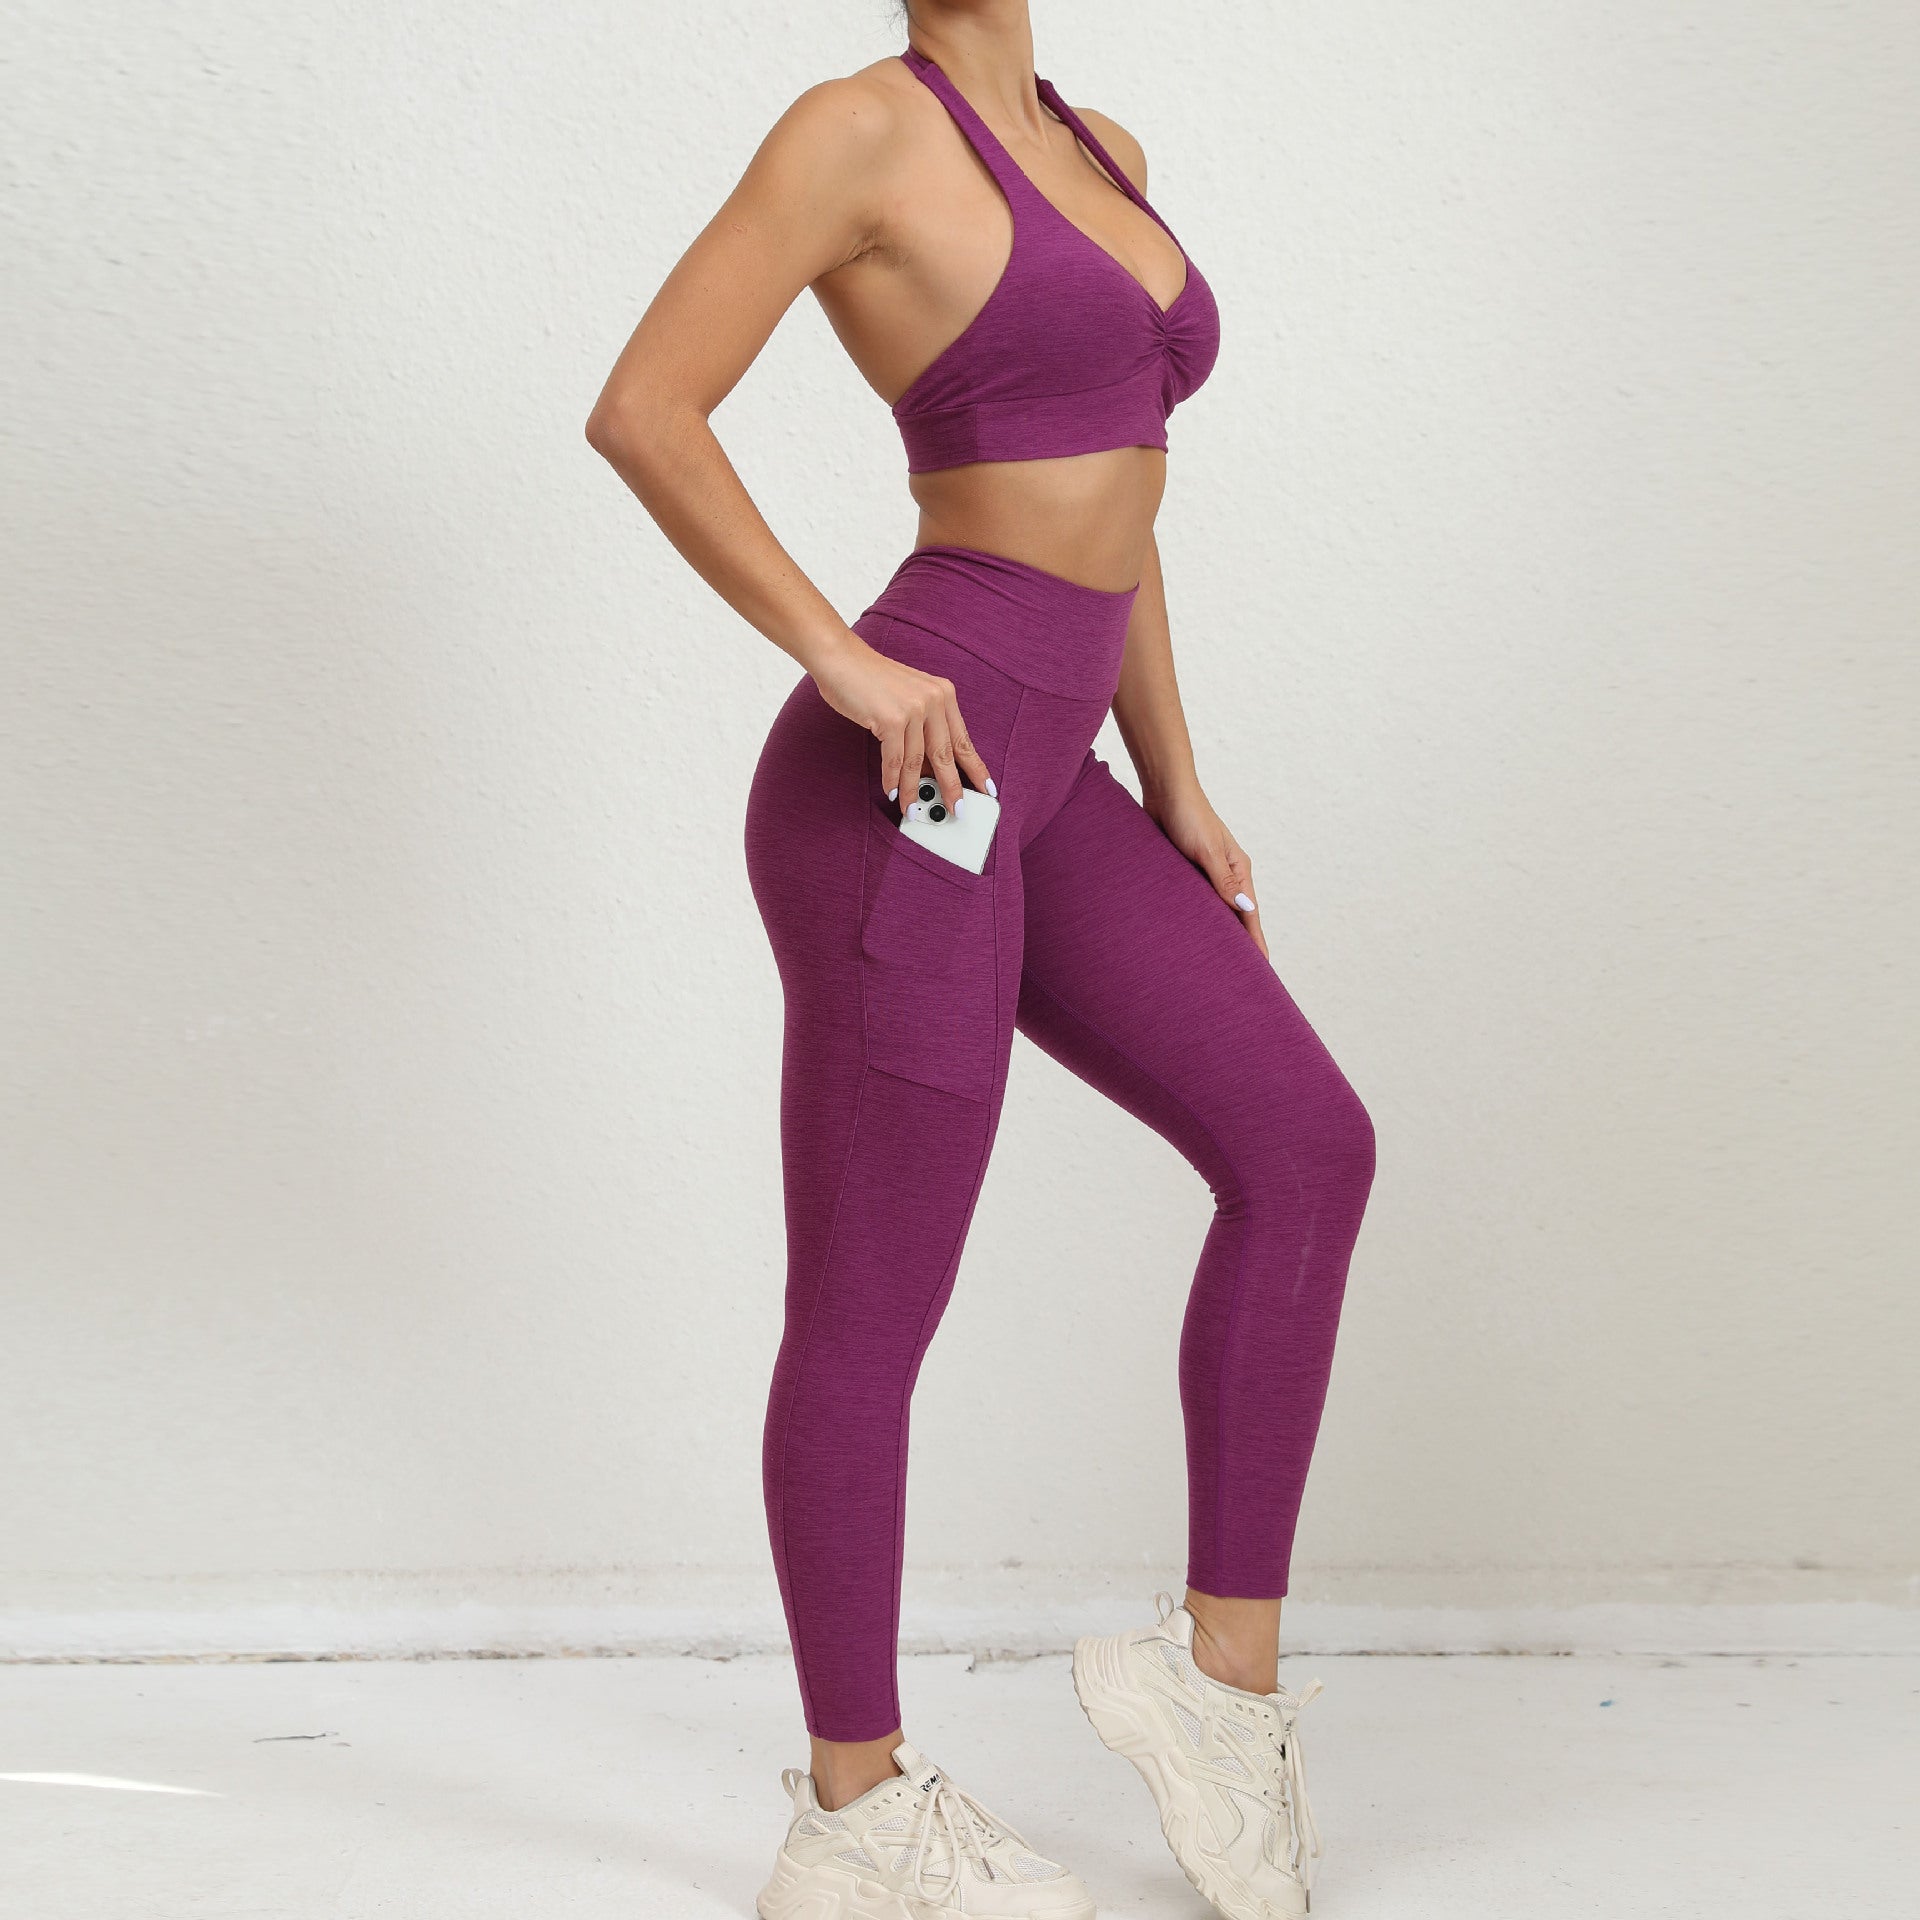 Halter Adjustable Shoulder Strap Peach Hip Pocket V Waist Tights Sports Yoga Fitness Suit